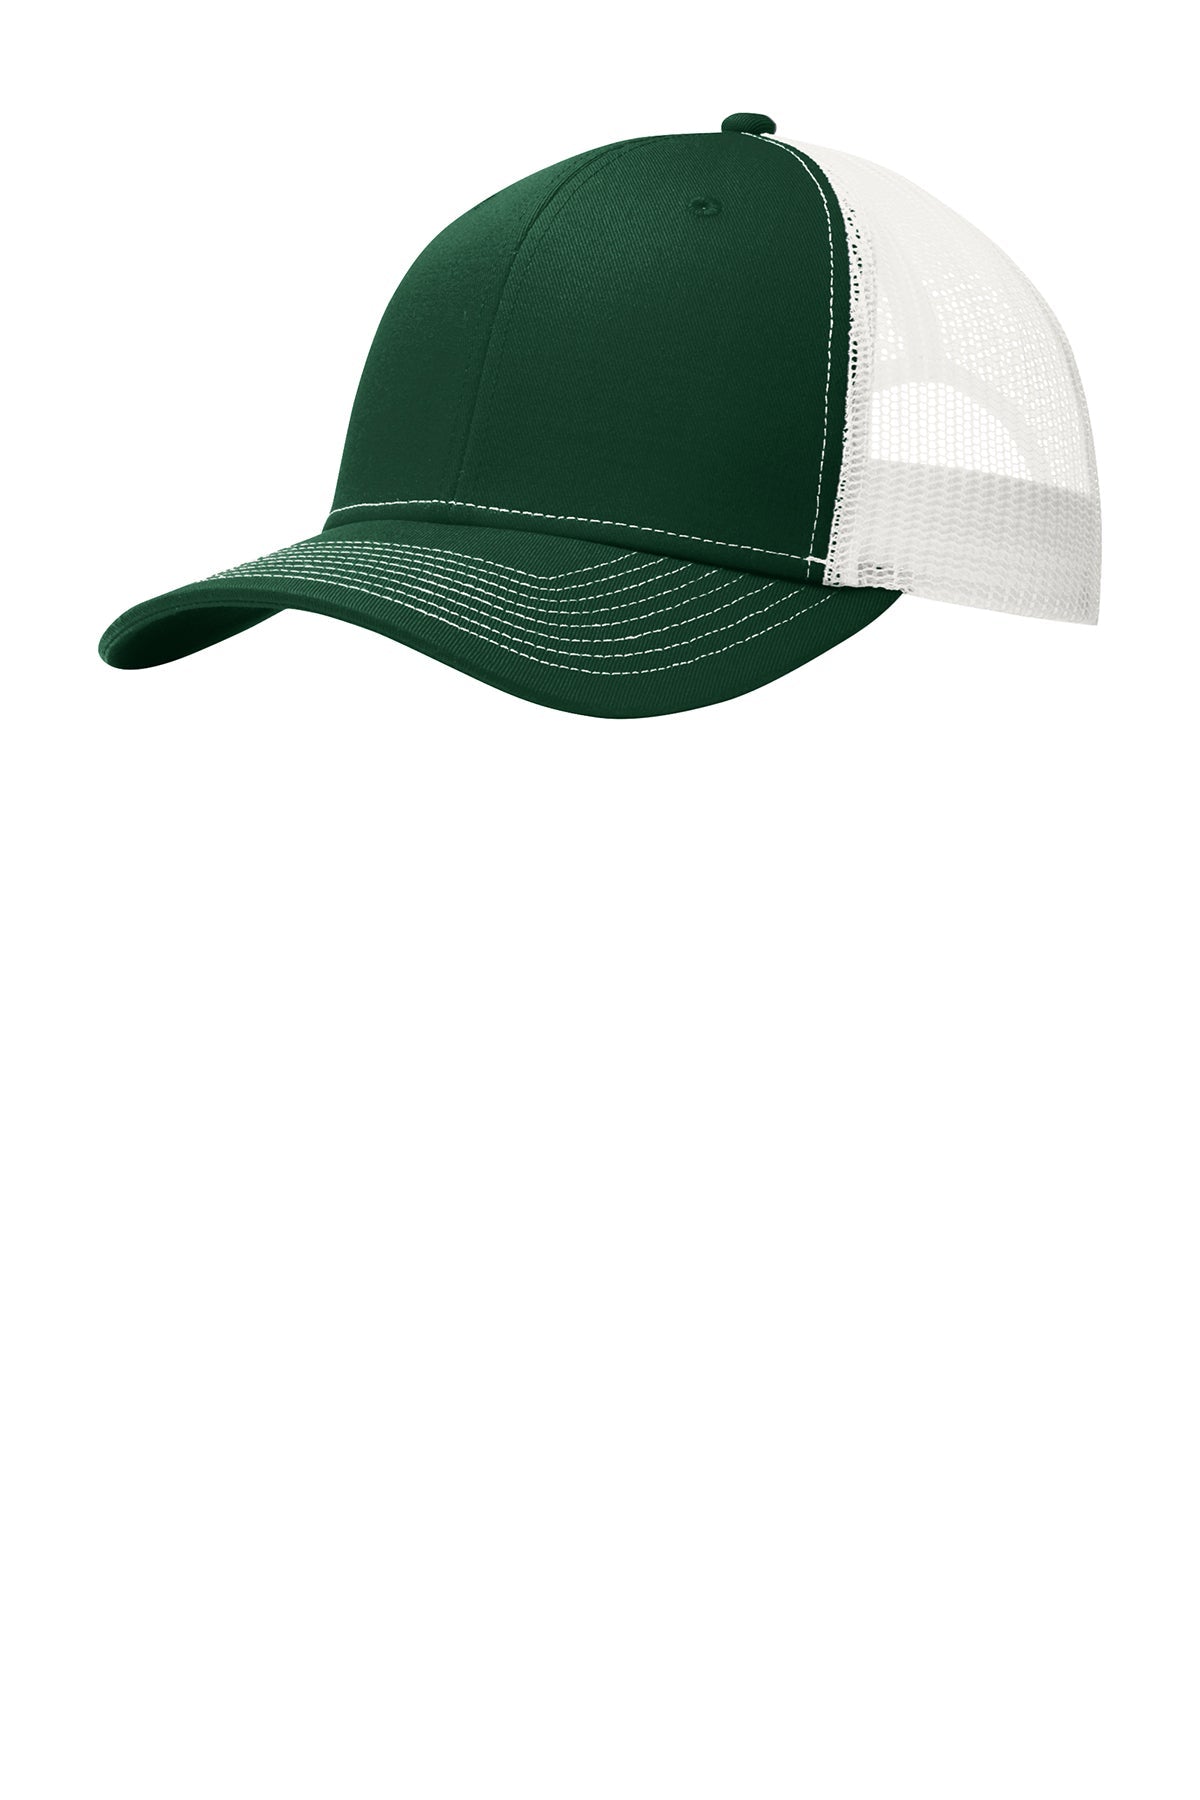 Port Authority Snapback Trucker Branded Caps, Dark Green/ White